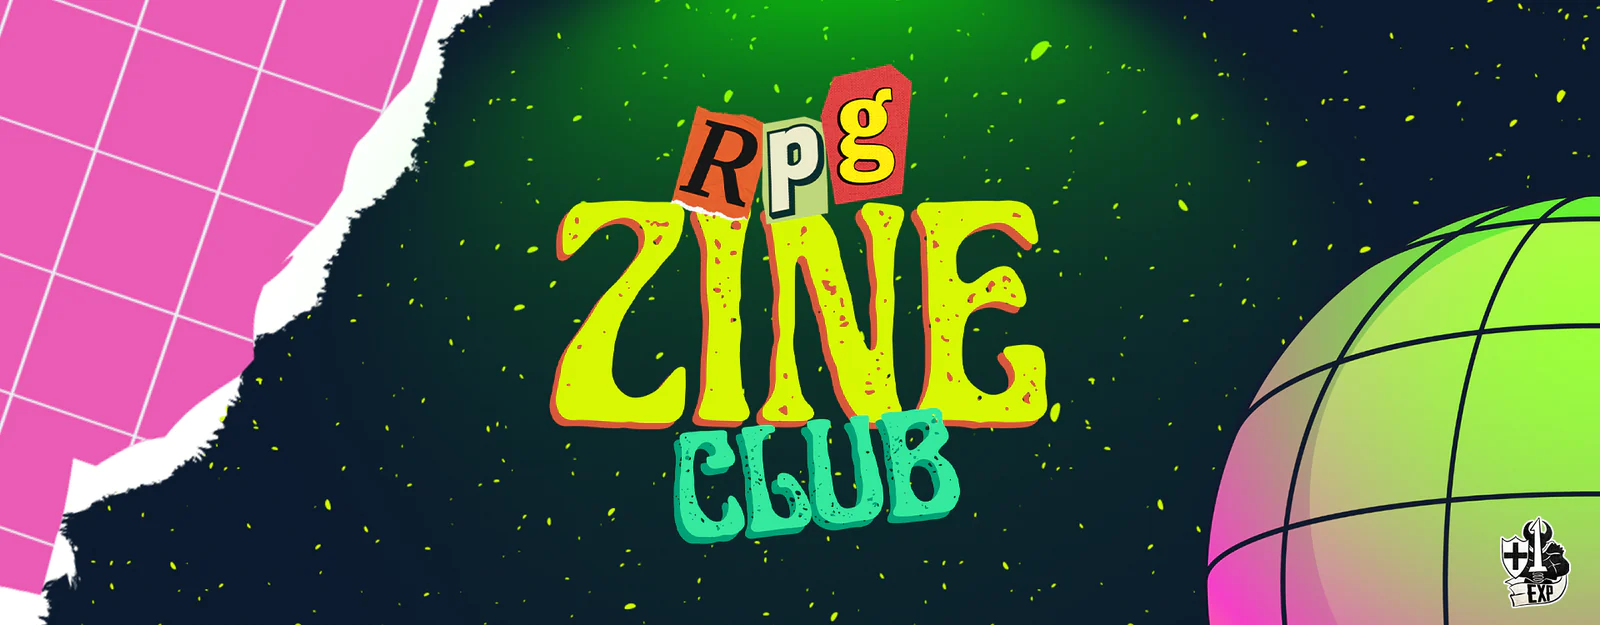 RPG Zine Club 01.png